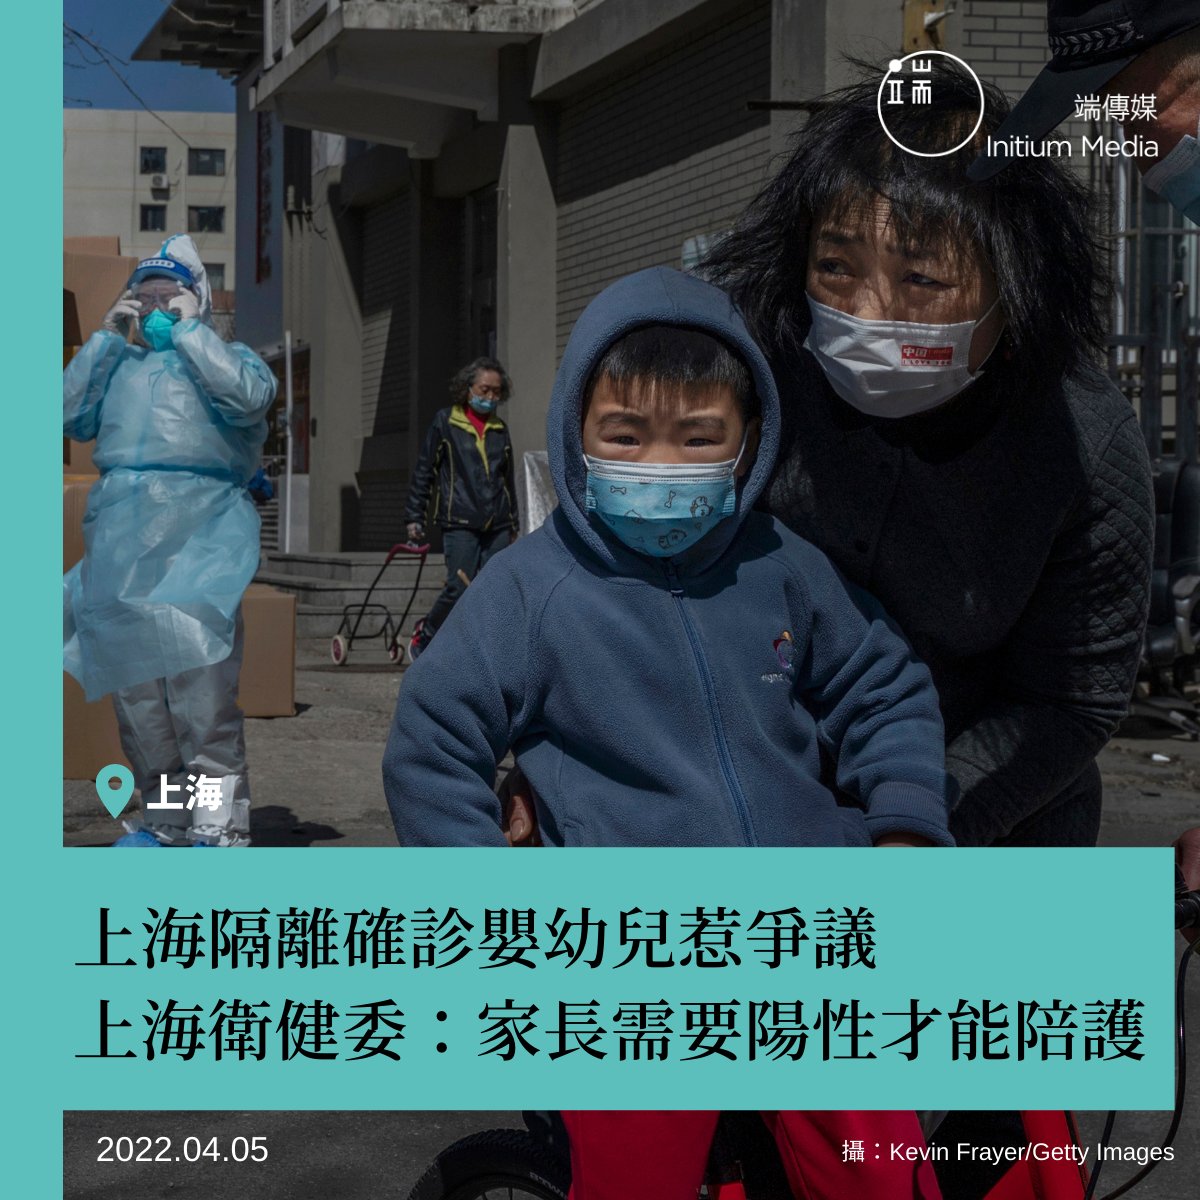 【 隔離確診 惹爭議？家長需要陽性才能陪護？】 上海自3月28日起因應新一波COVID-19疫情實施「半封城」，然而近日因有成人與嬰幼兒分開收治的措施，而確診的嬰幼兒將被迫與家長分開而可能導致